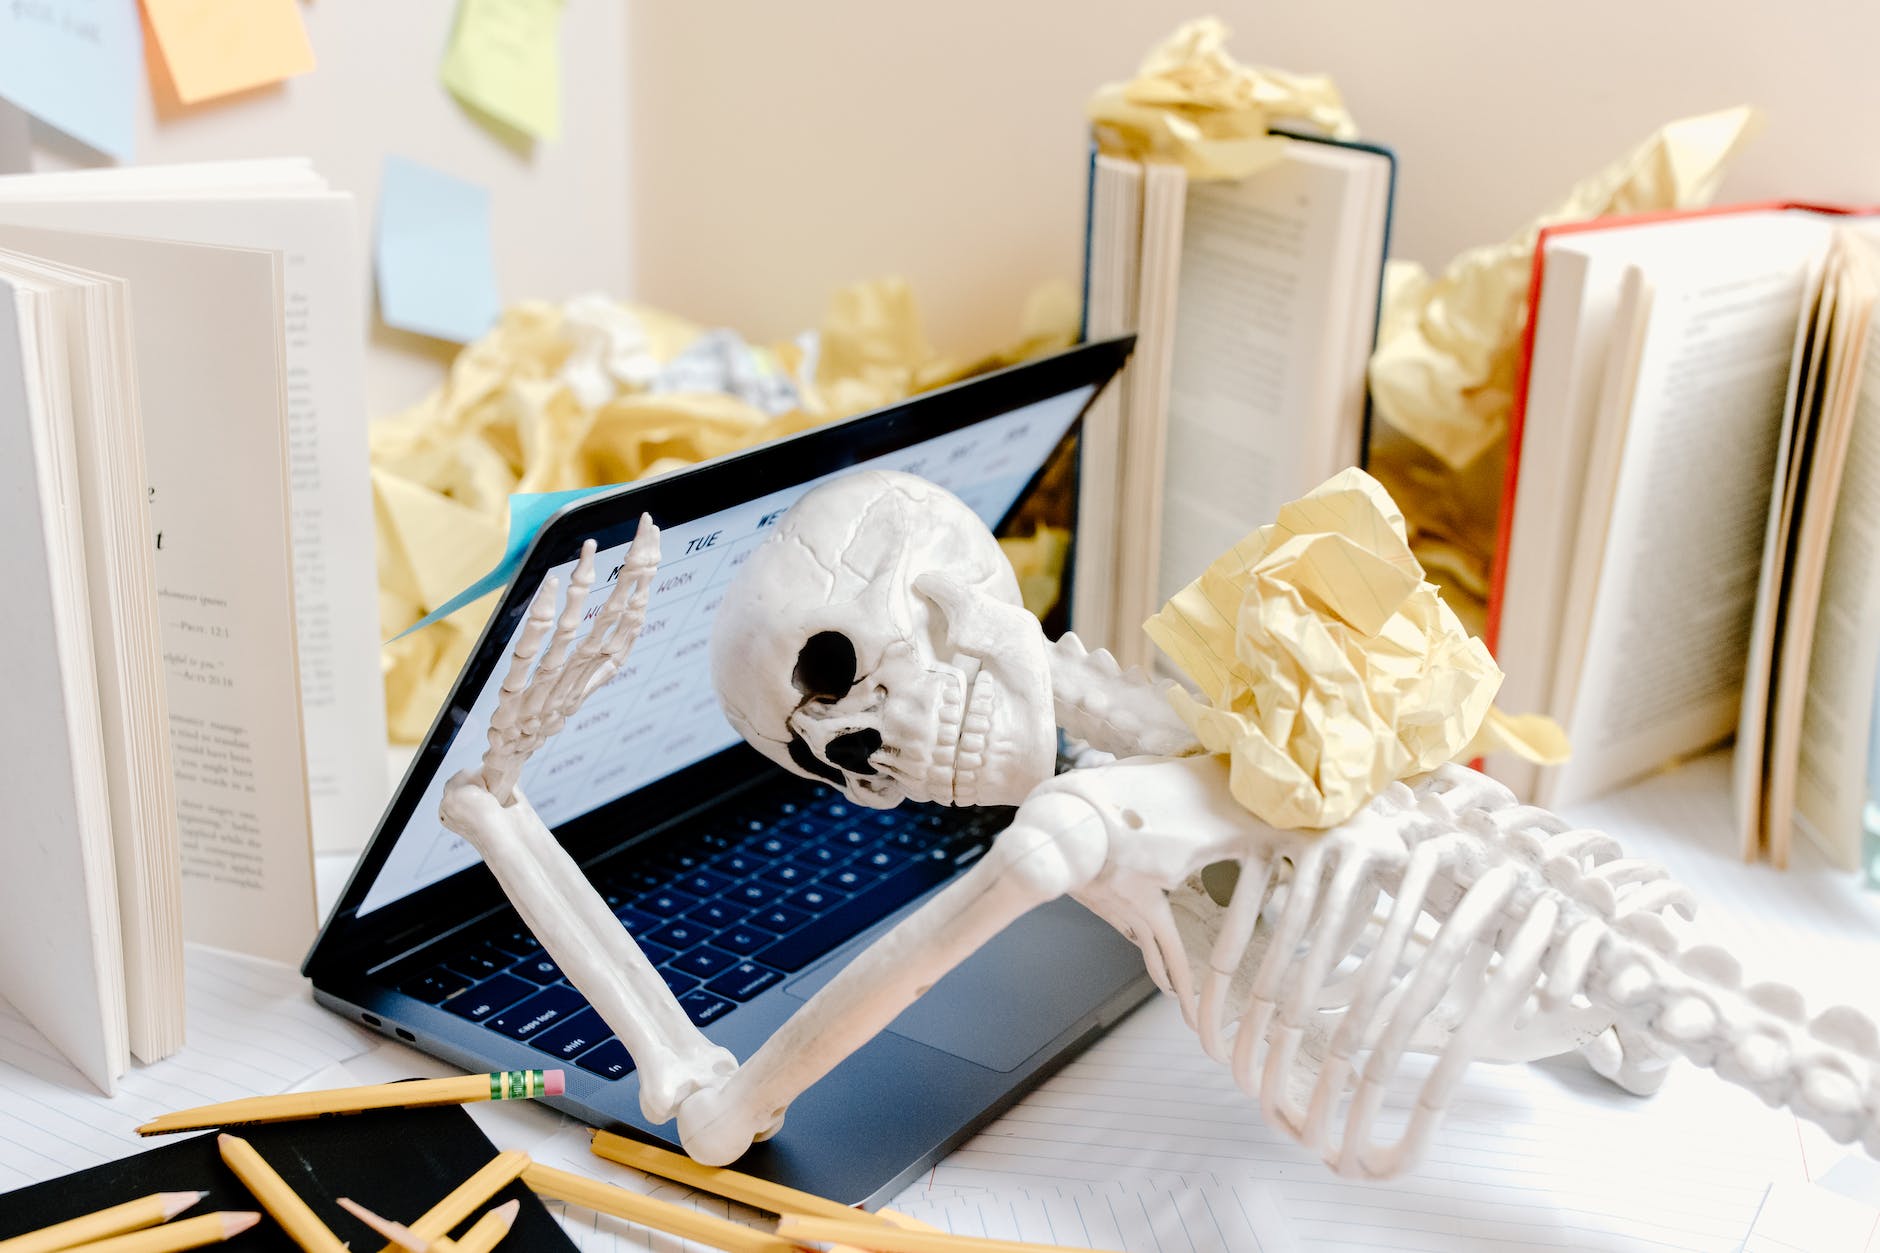 white skeleton figurine on black laptop computer